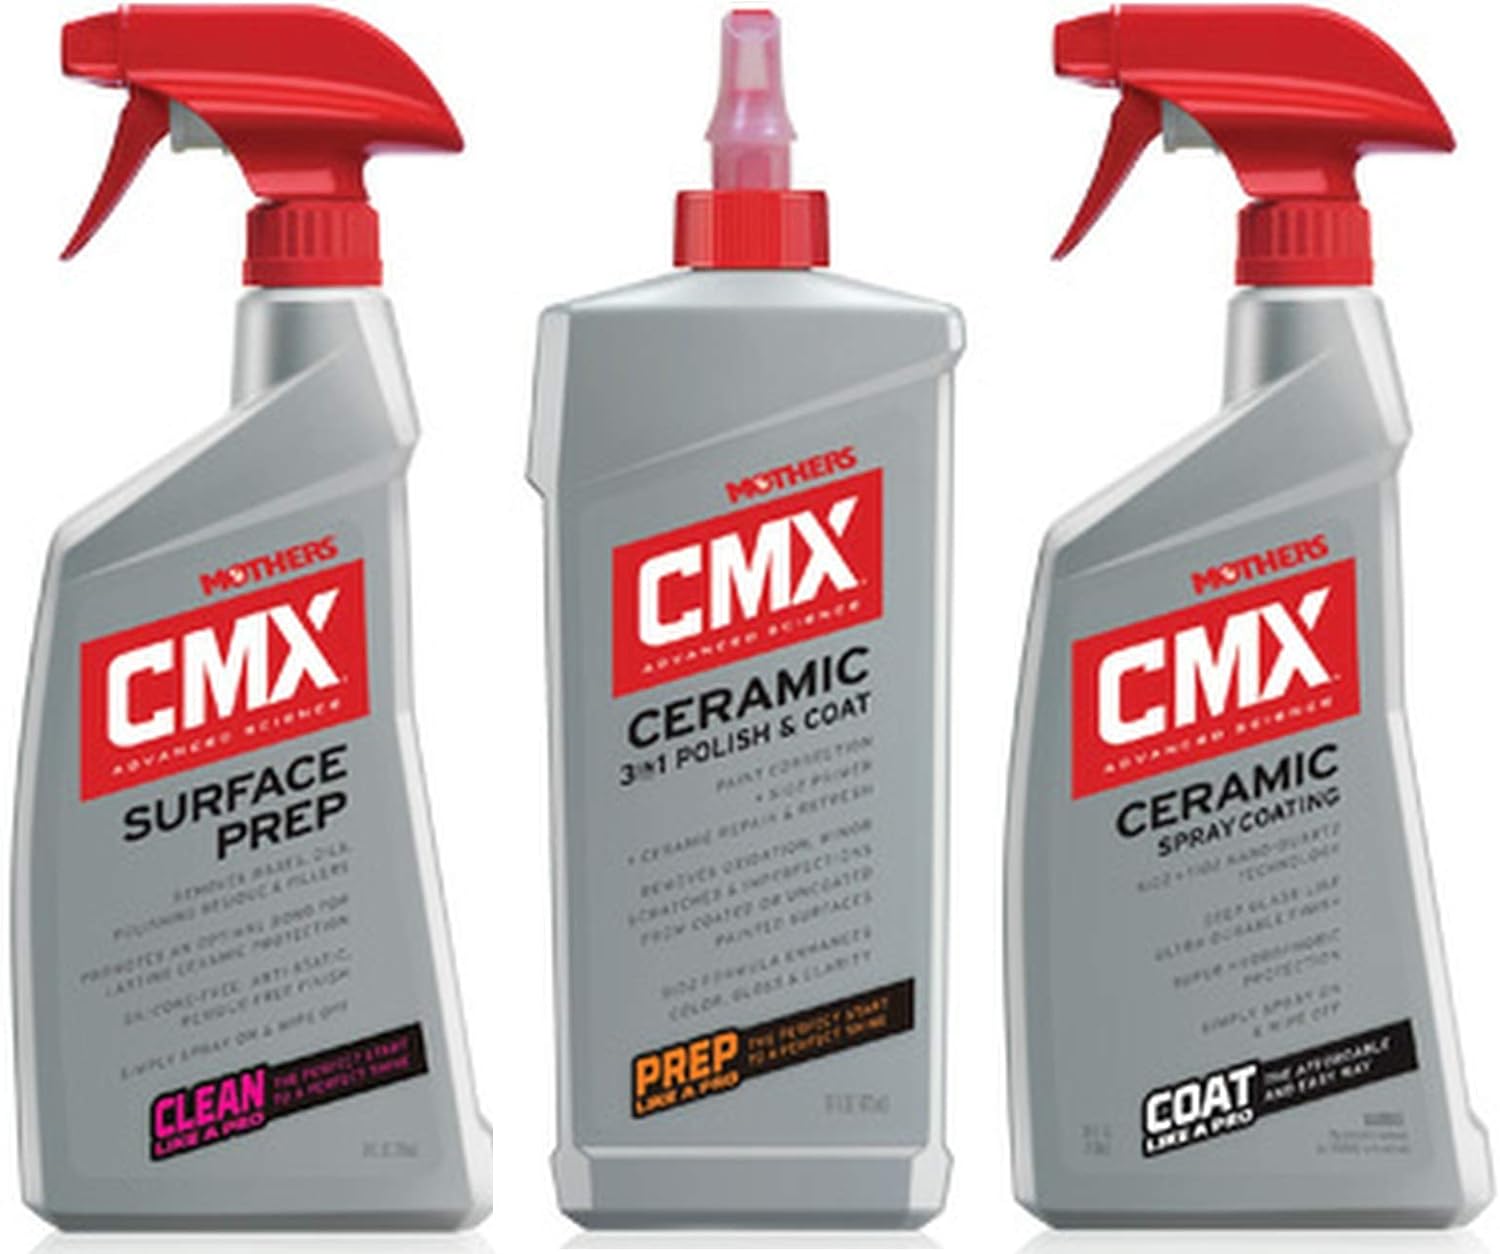 Generic Mothers CMX Ceramic Spray PREP + 3 in 1 Polish + Coating Bundle